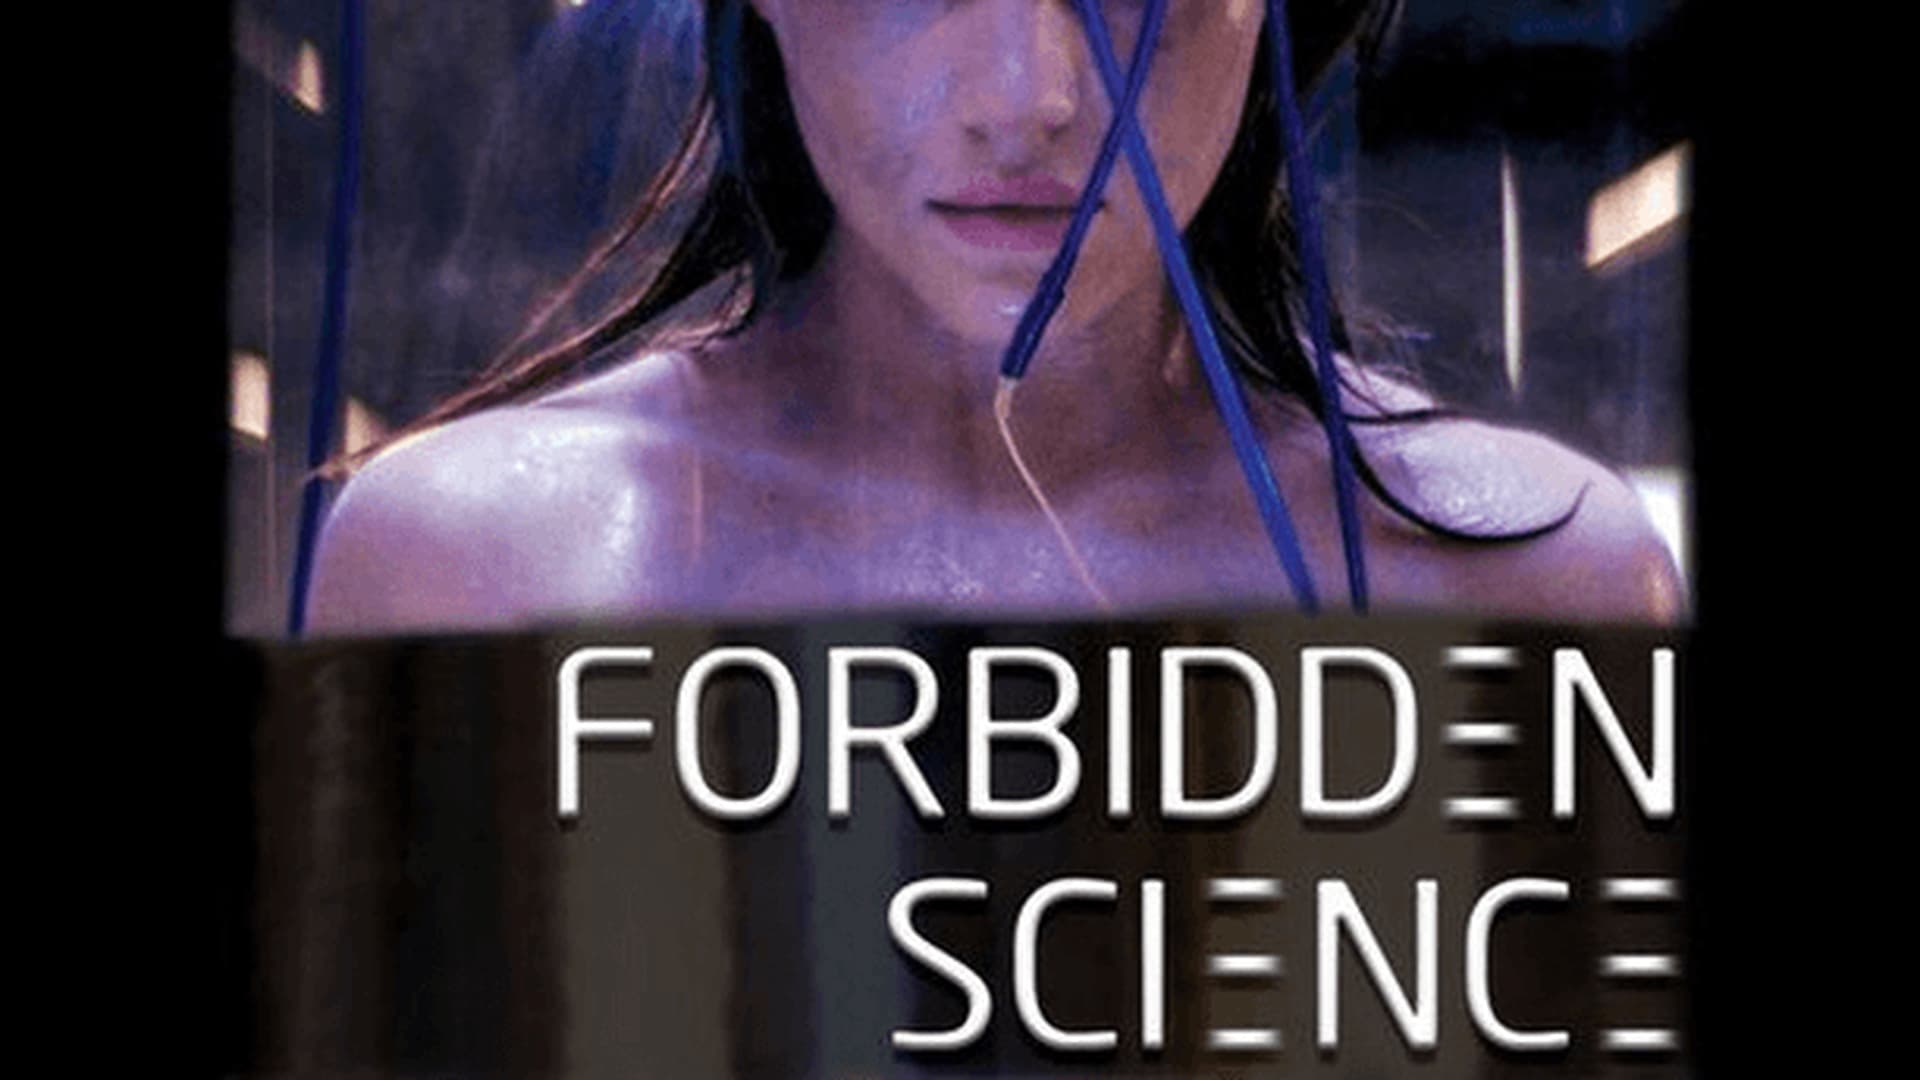 Watch forbidden science online free